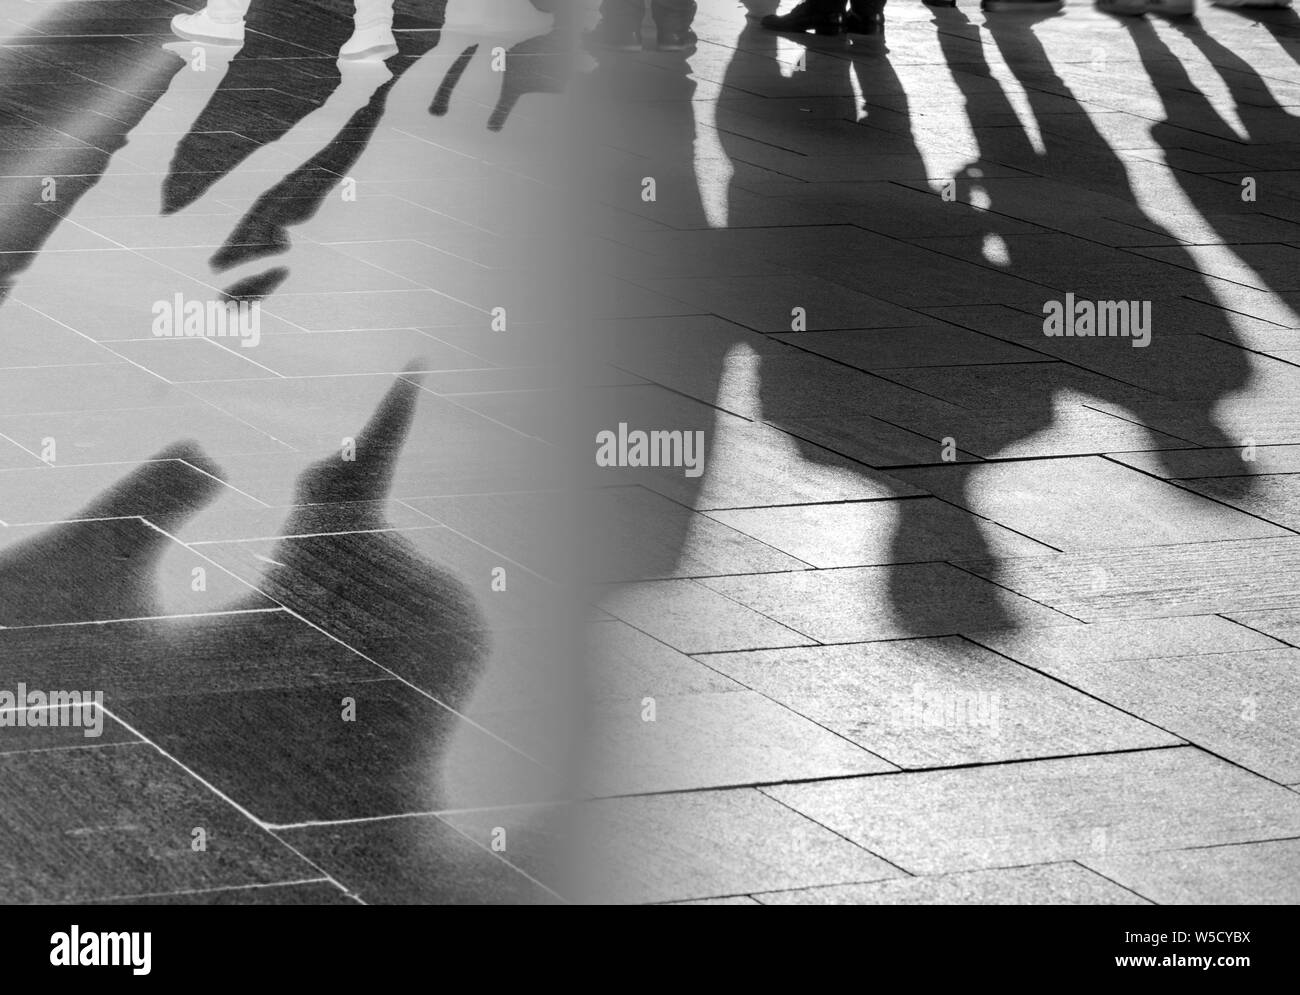 Ombres et silhouettes de personnes sur un trottoir comme arrière-plan Banque D'Images